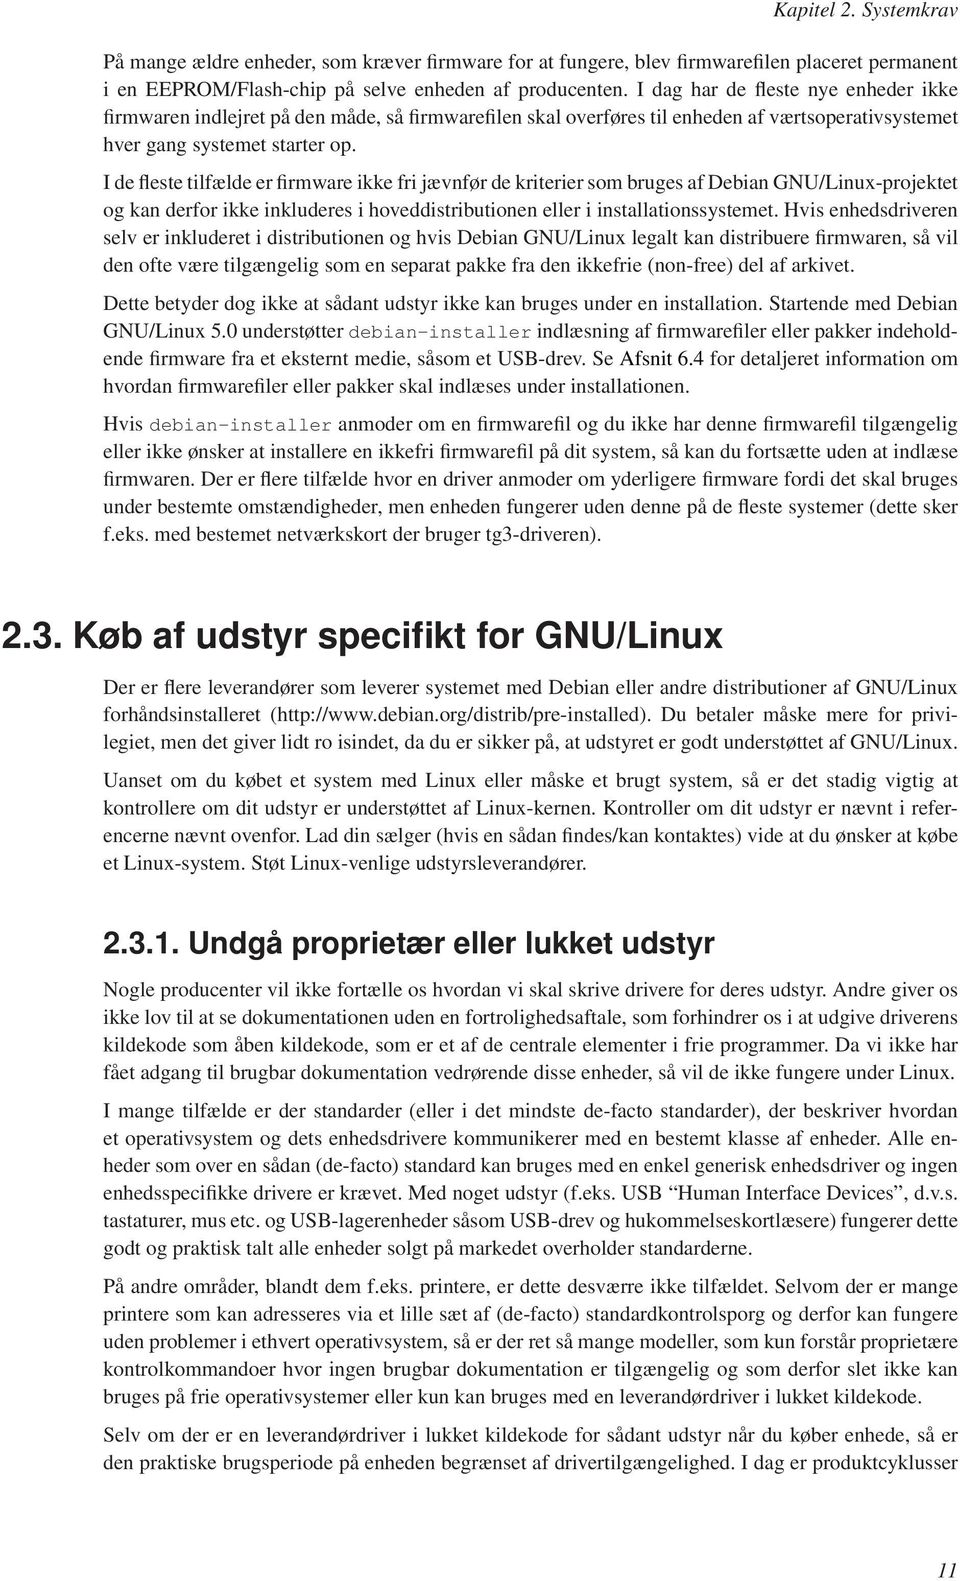 I de fleste tilfælde er firmware ikke fri jævnfør de kriterier som bruges af Debian GNU/Linux-projektet og kan derfor ikke inkluderes i hoveddistributionen eller i installationssystemet.